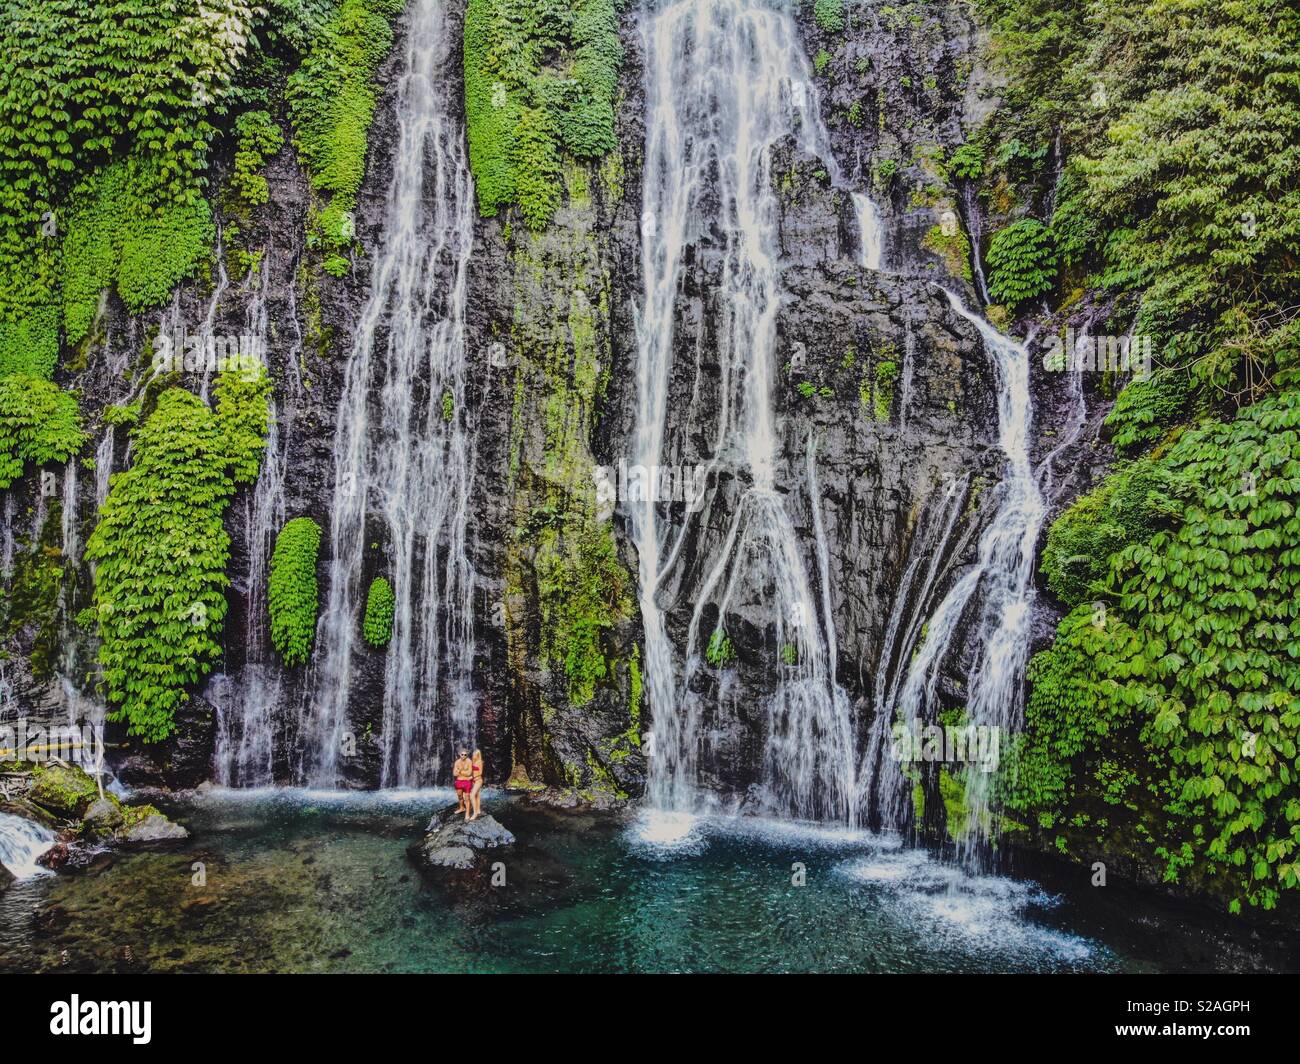 A caccia di cascate Foto Stock